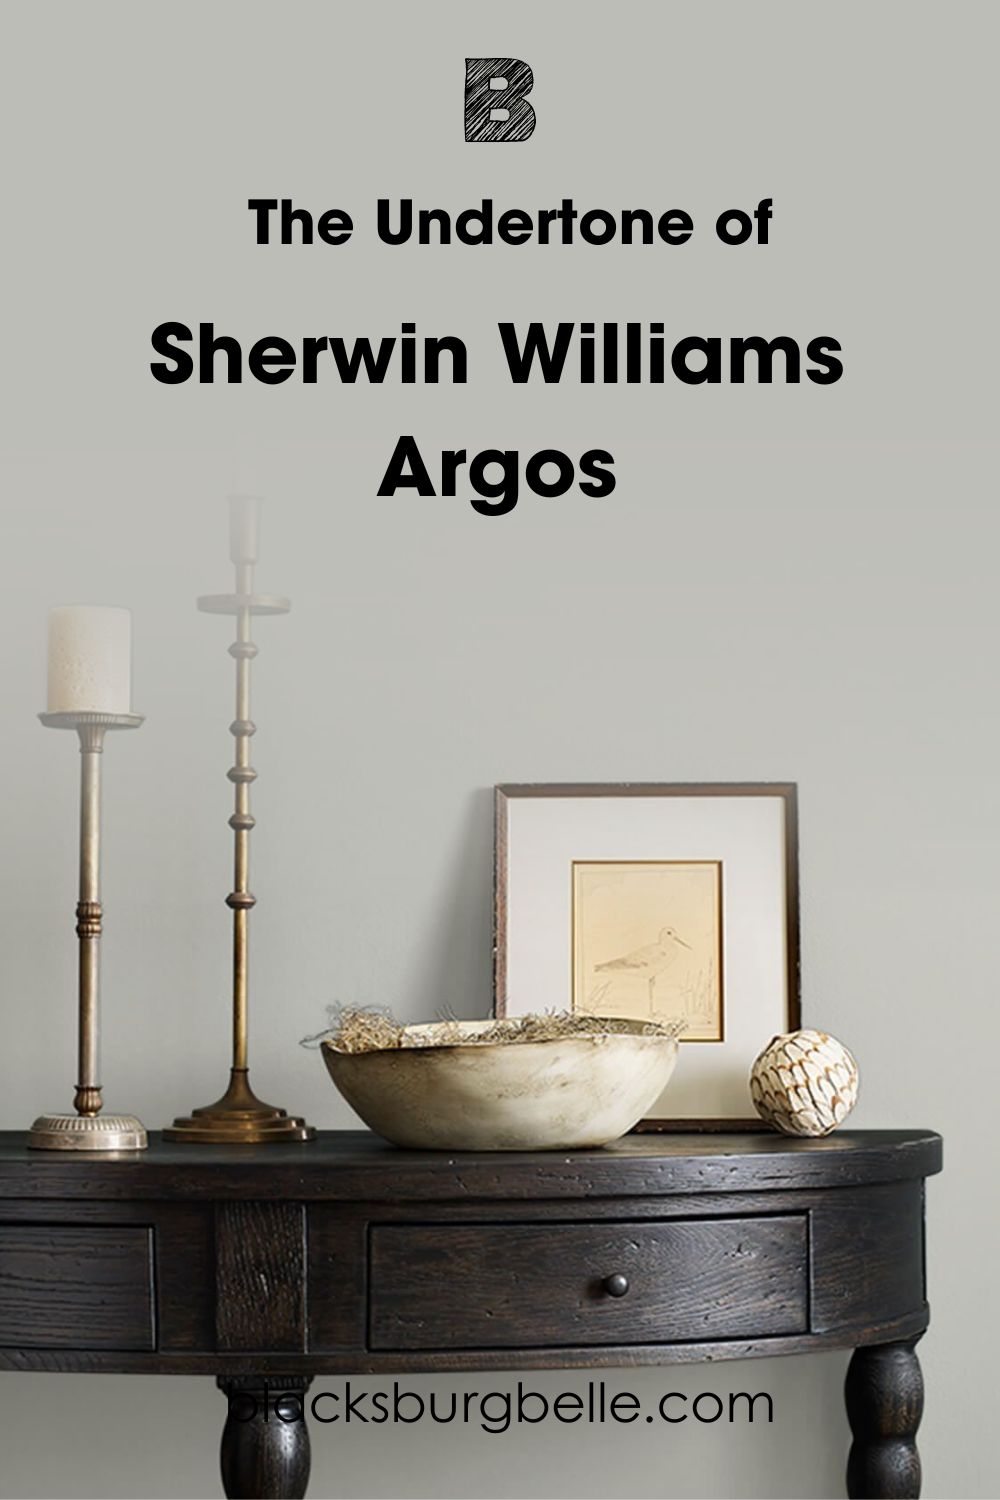 Sherwin Williams Argos SW 7065